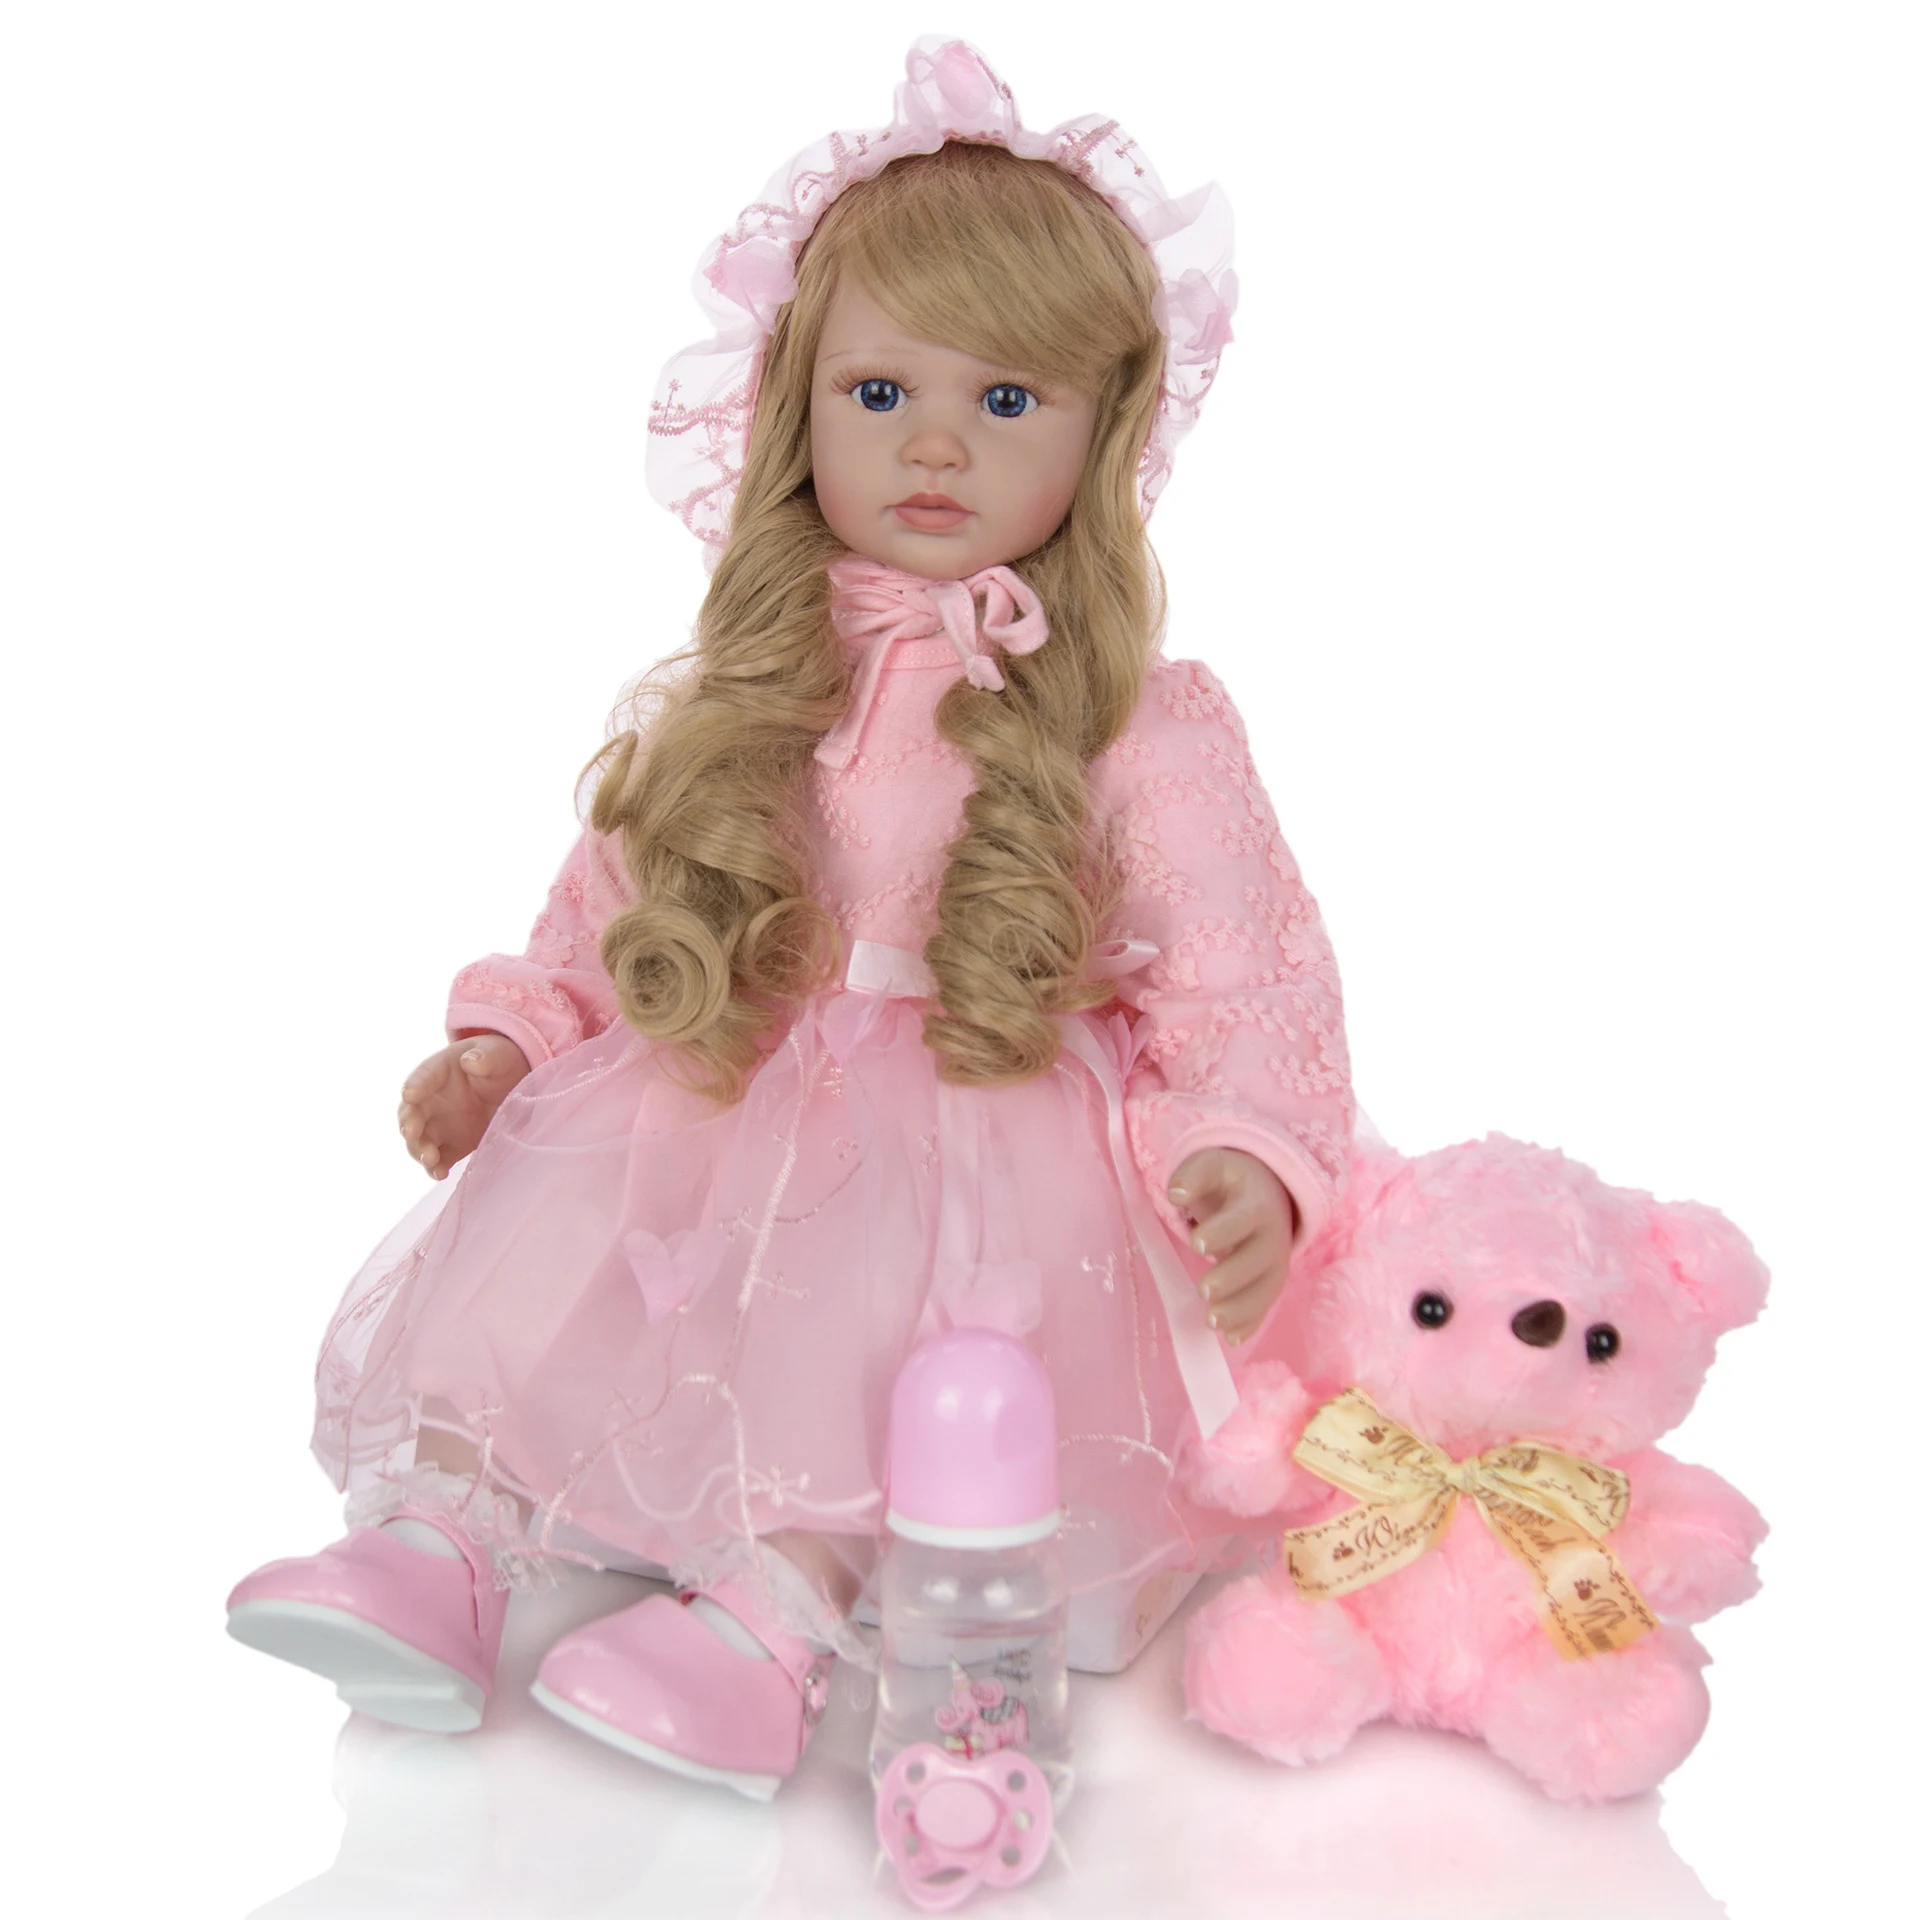 Кукла npk 24 дюйма младенец получивший новую жизнь 60 см силиконовый мягкий реалистический для принцессы для девочки куклы для продажи в этническом стиле куклы для детей для дня рождения, Рождества, Gif